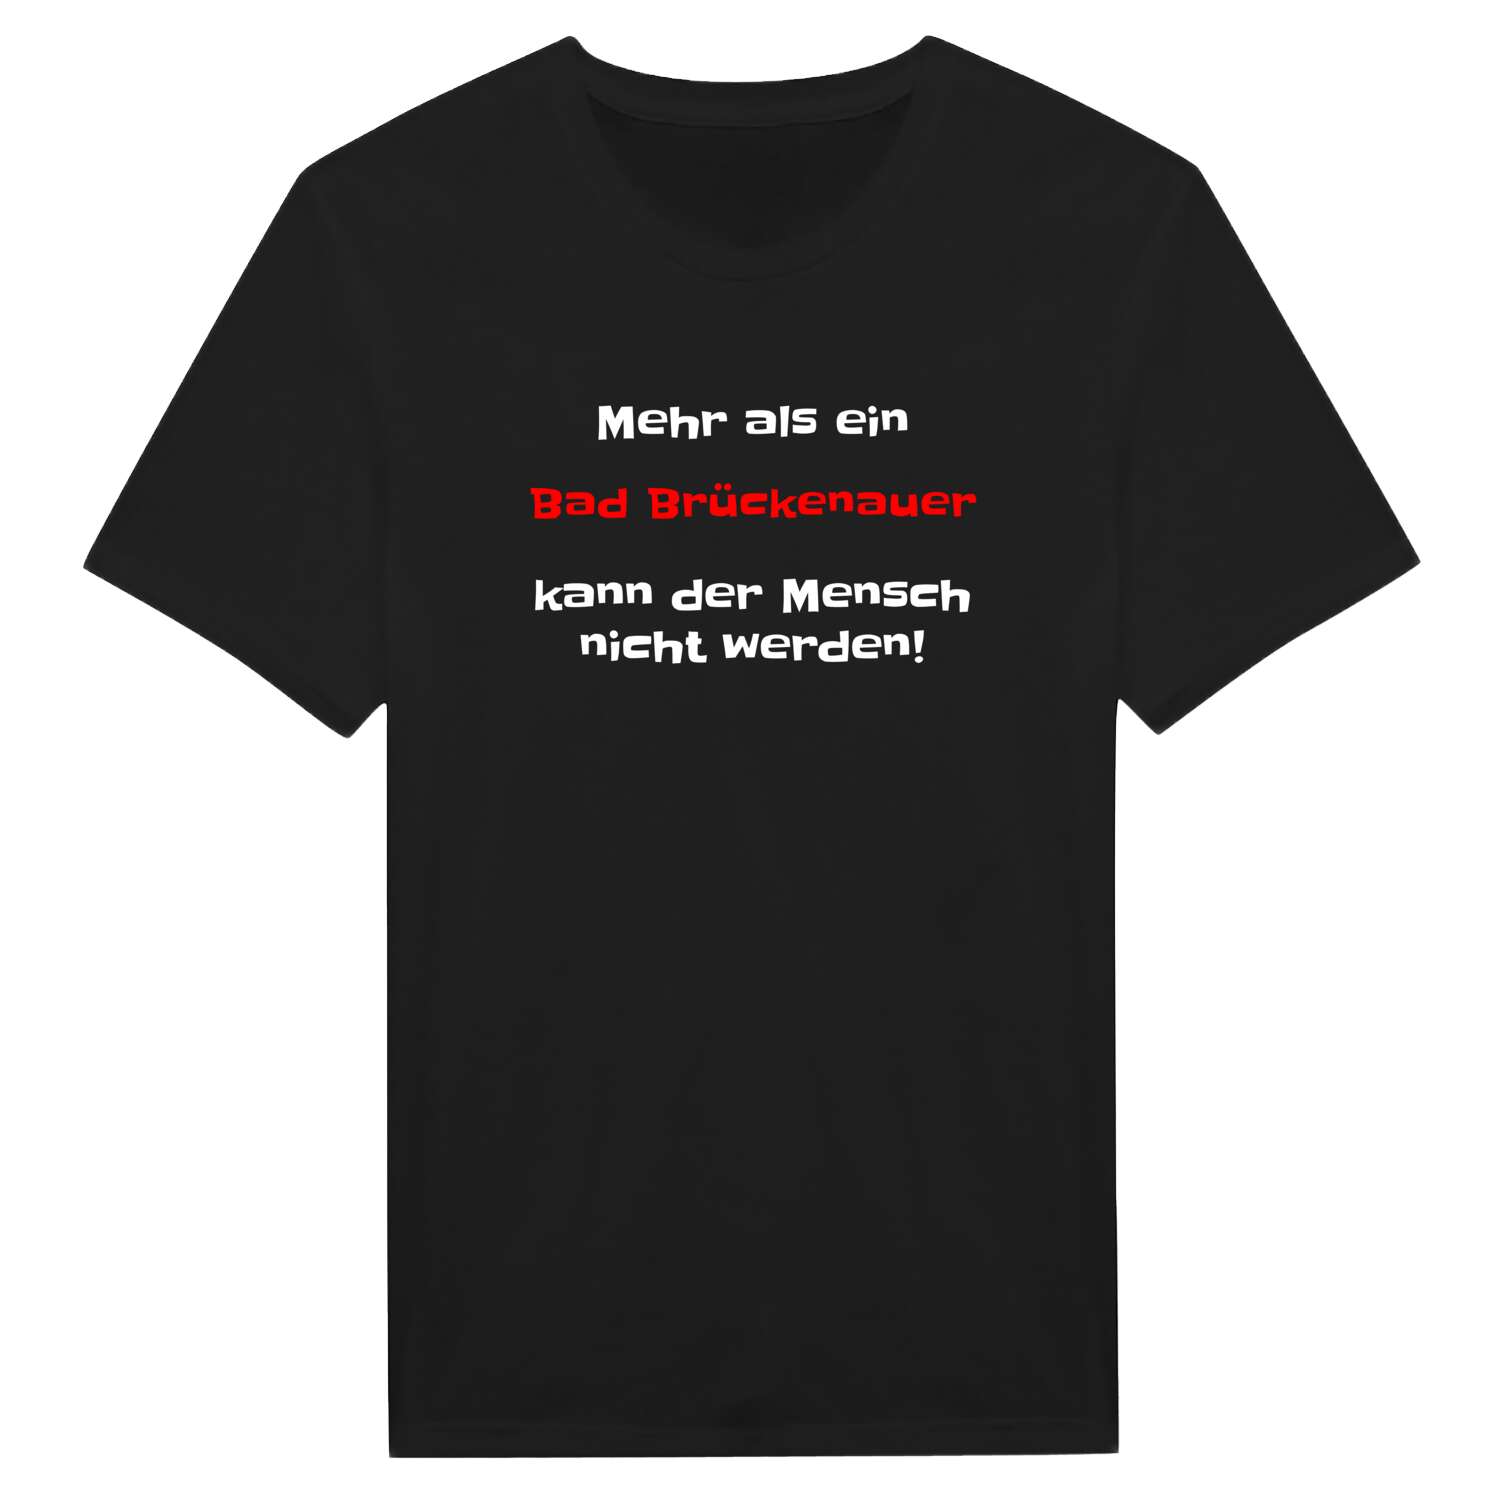 Bad Brückenau T-Shirt »Mehr als ein«